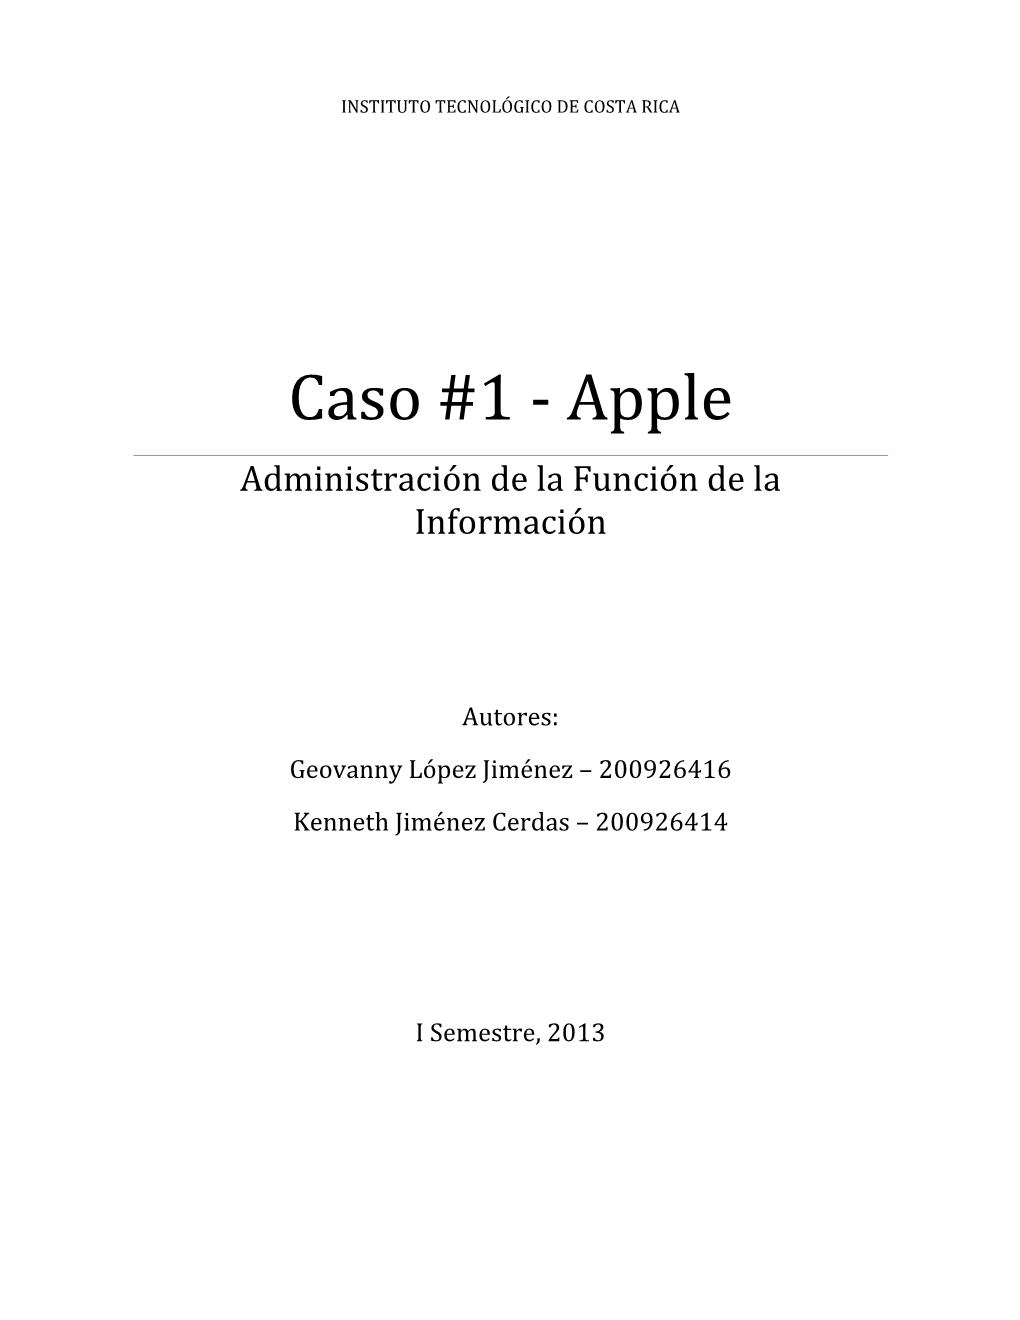 Caso #1 - Apple Administración De La Función De La Información